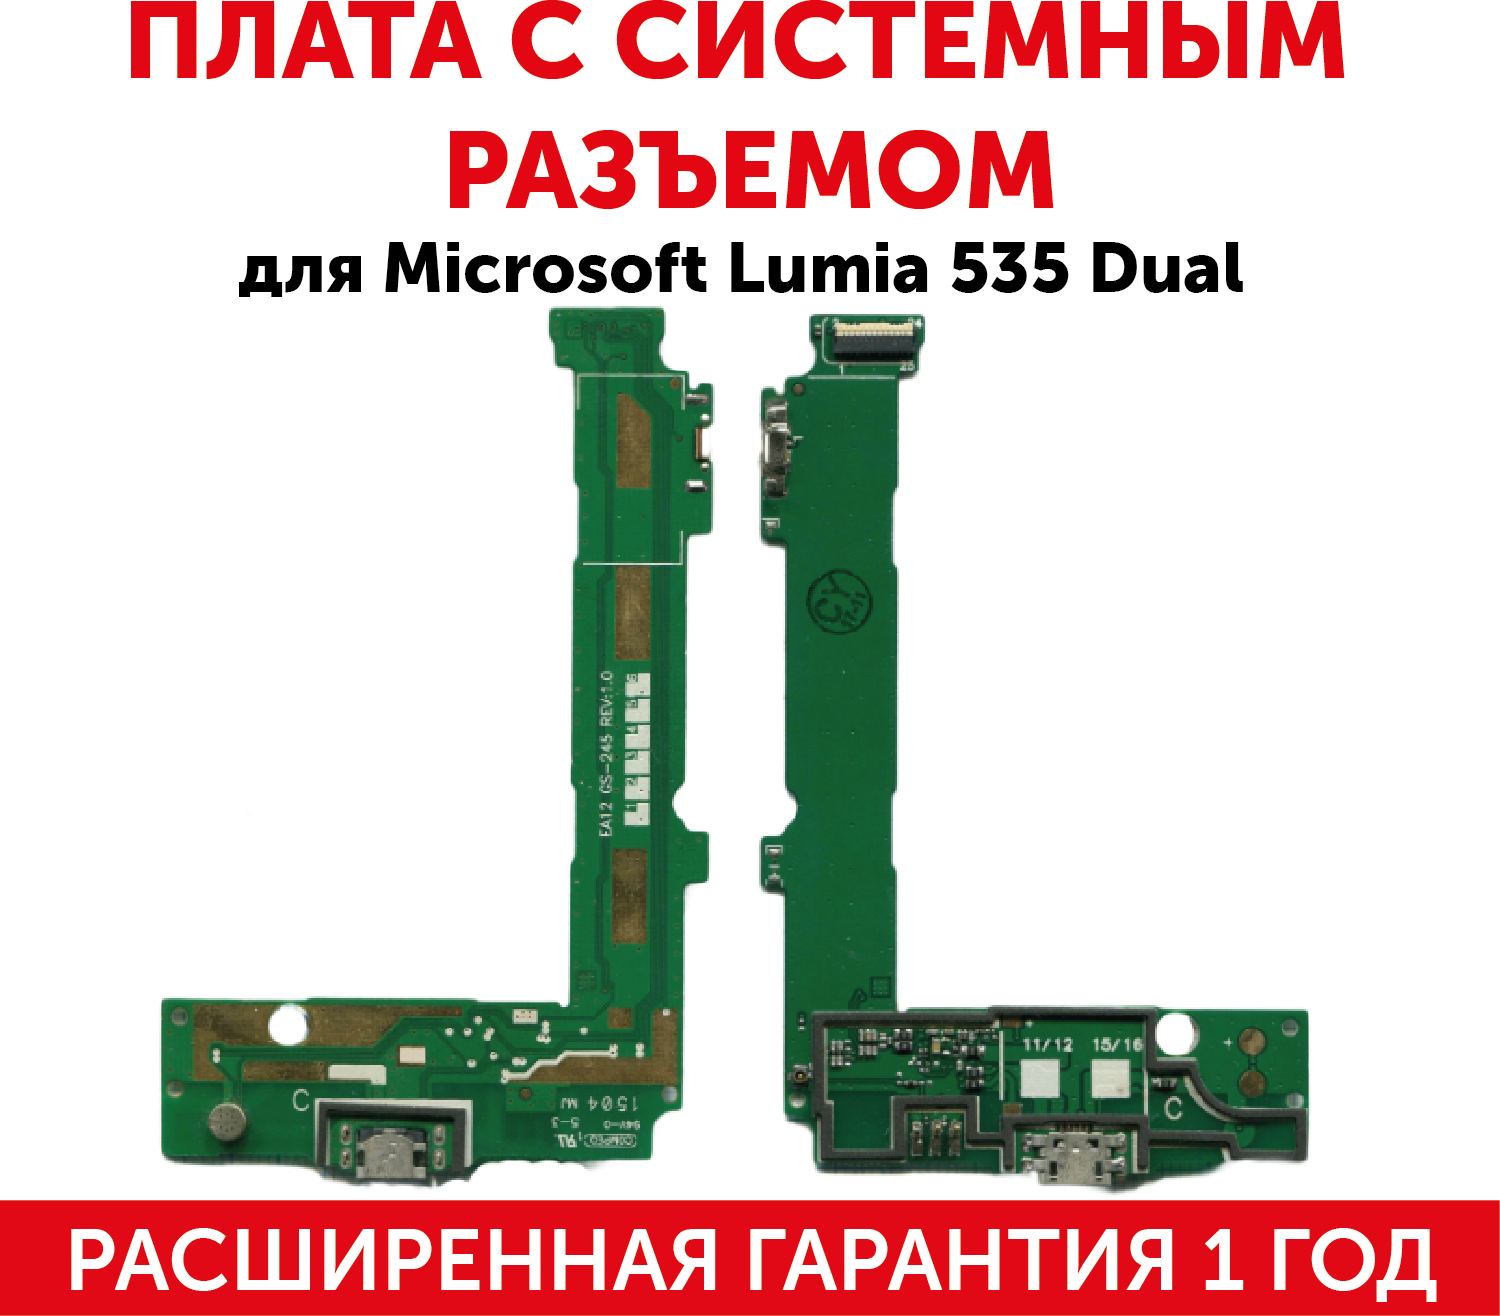 Разъем (гнездо зарядки) MicroUSB для мобильного телефона (смартфона) Microsoft 535 Dual (плата с системным разъемом микрофоном и шлейфом)